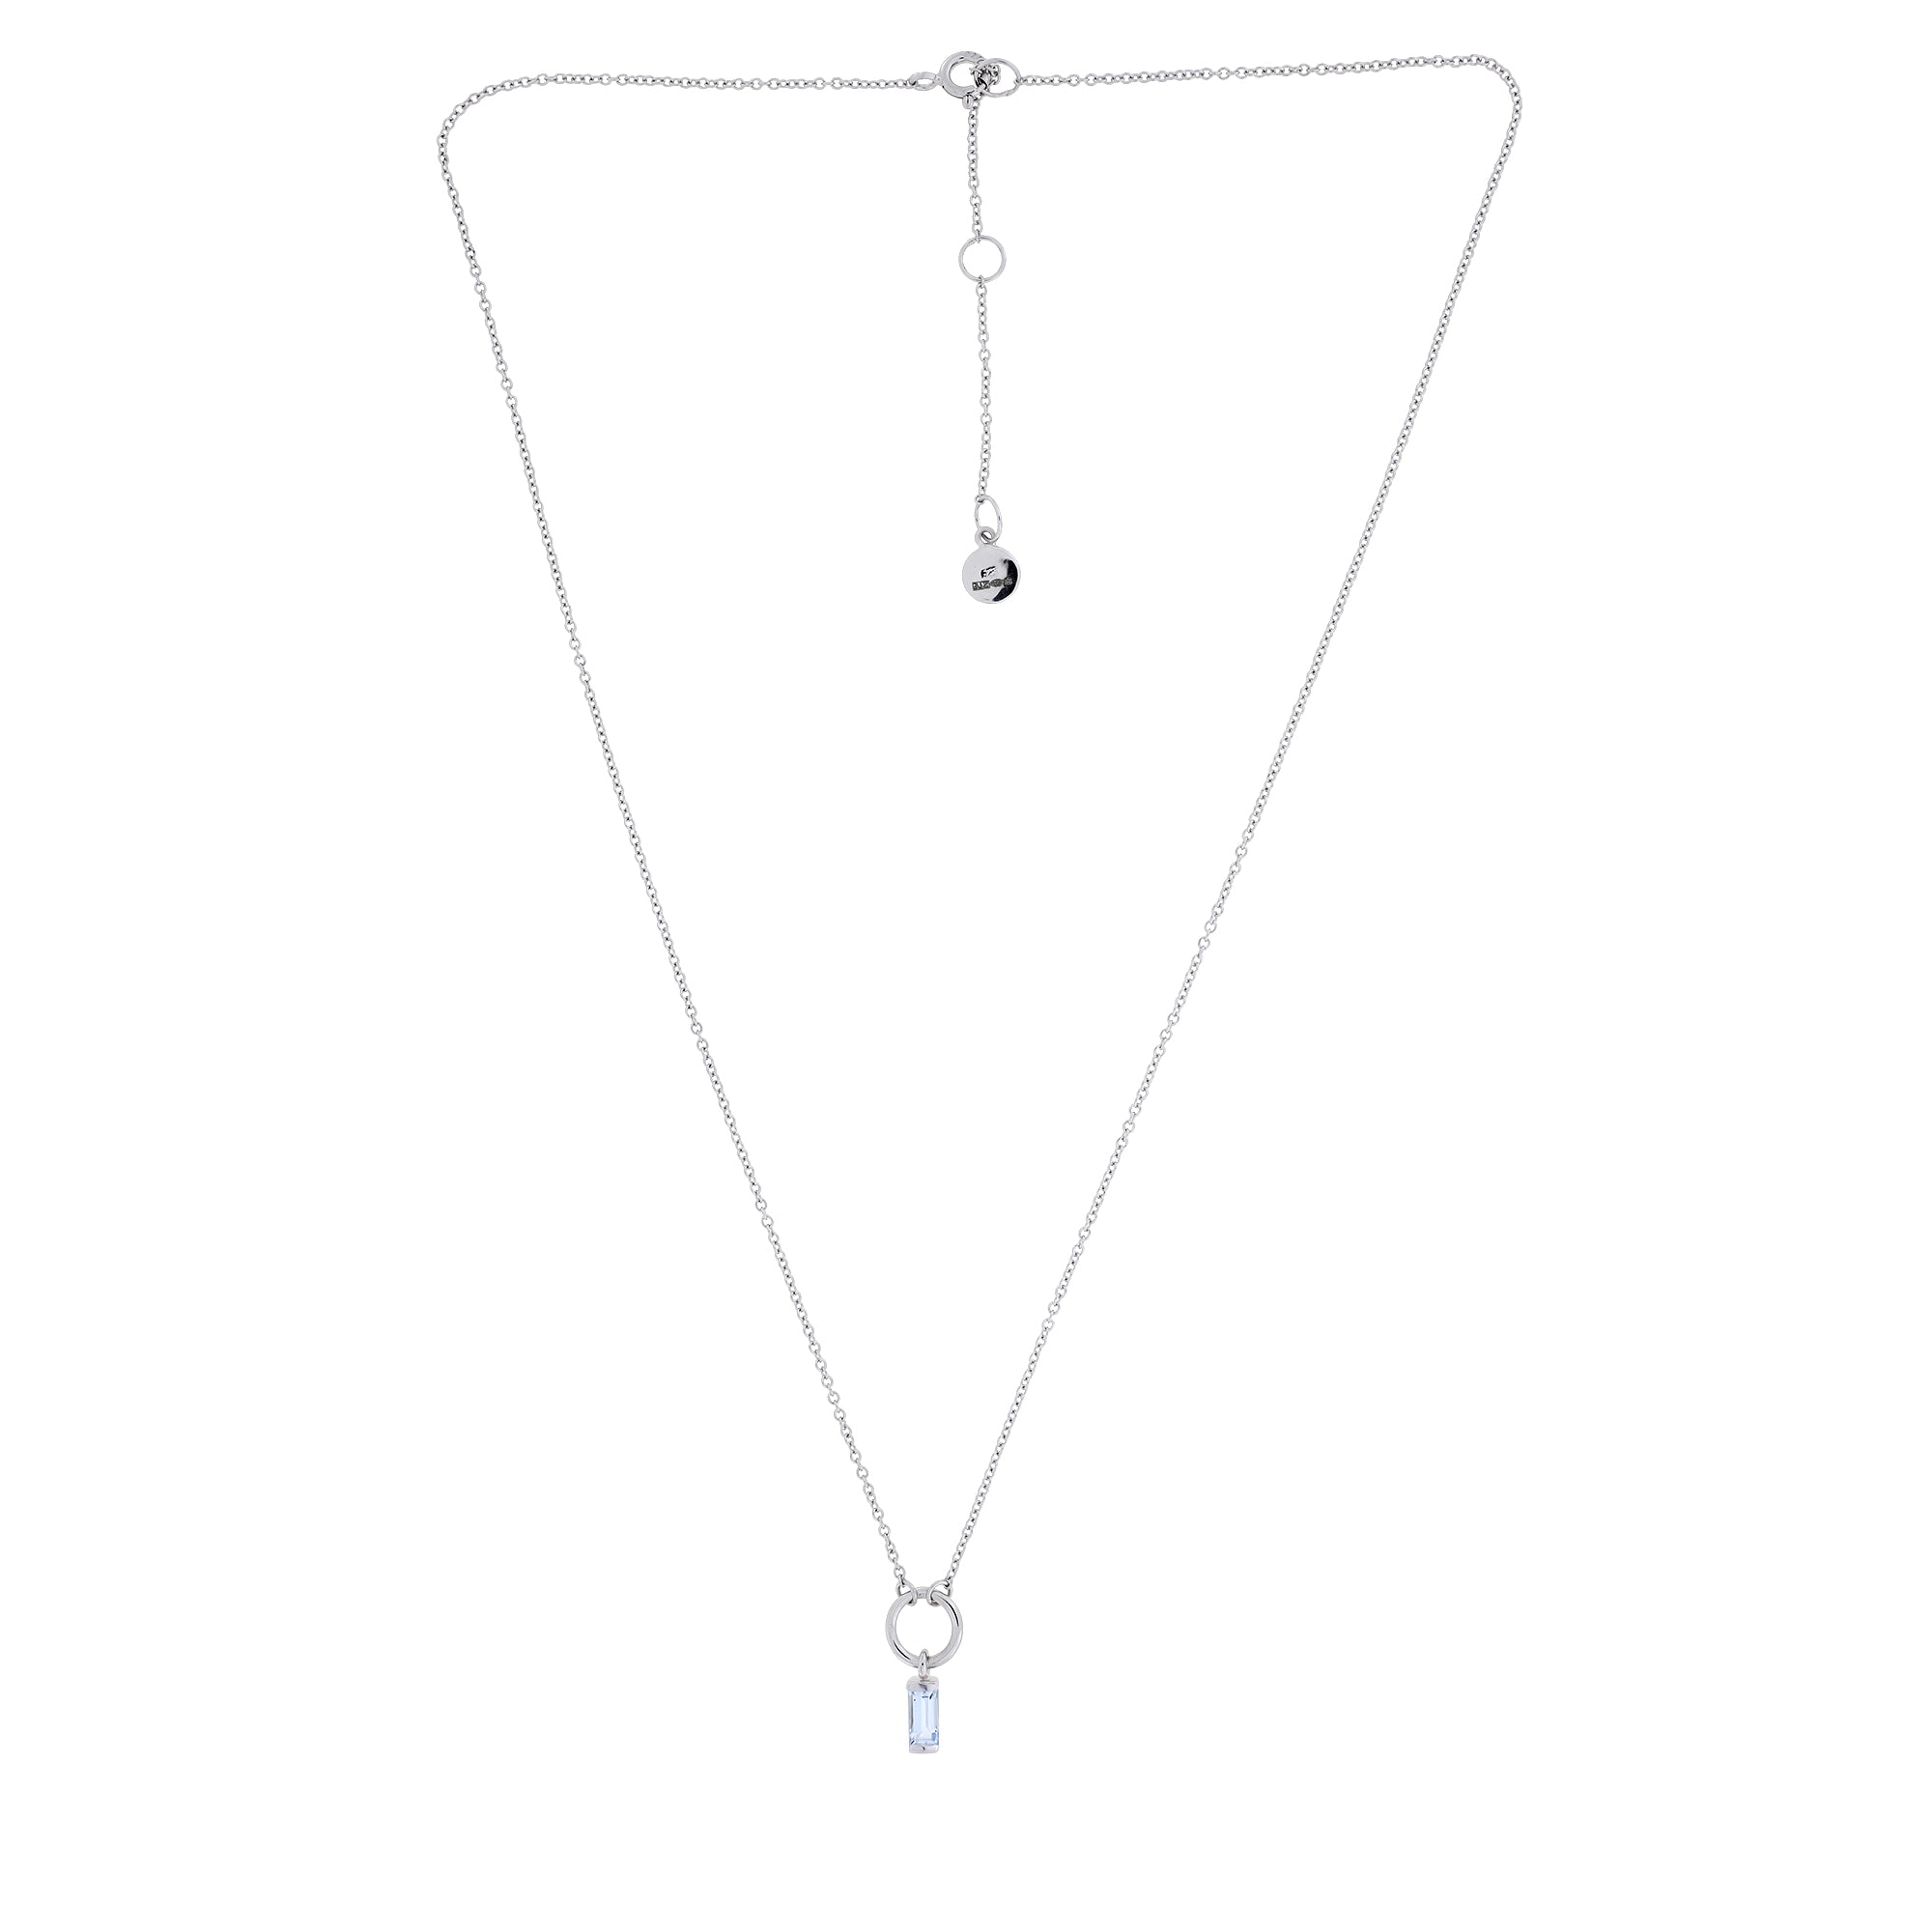 Silver Blue Topaz Baguette Necklace